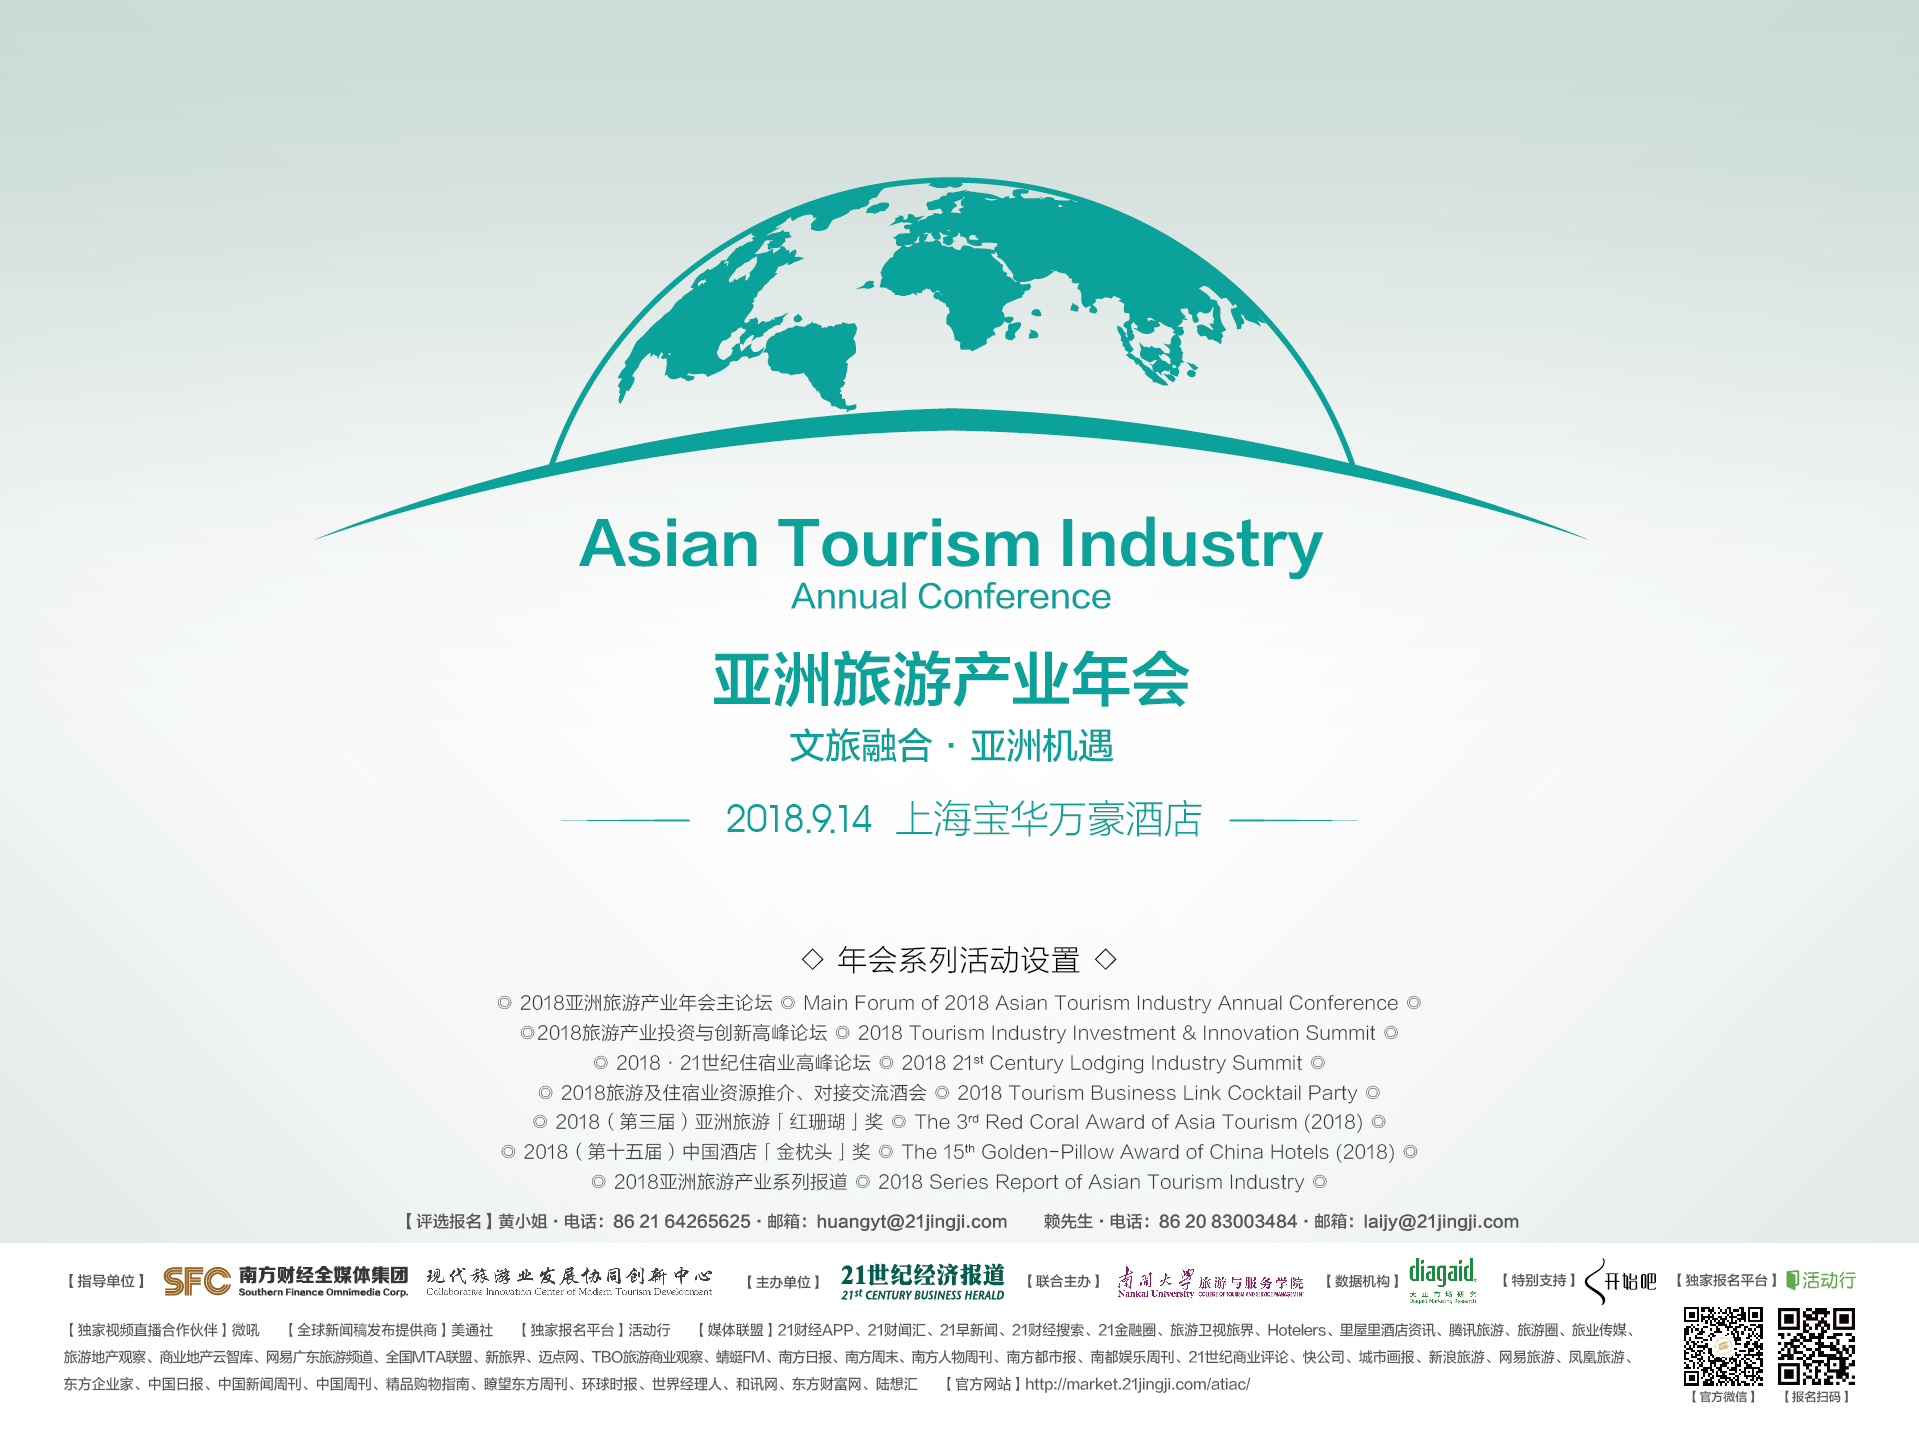 2018亚洲旅游产业年会将于9月14日上海举行